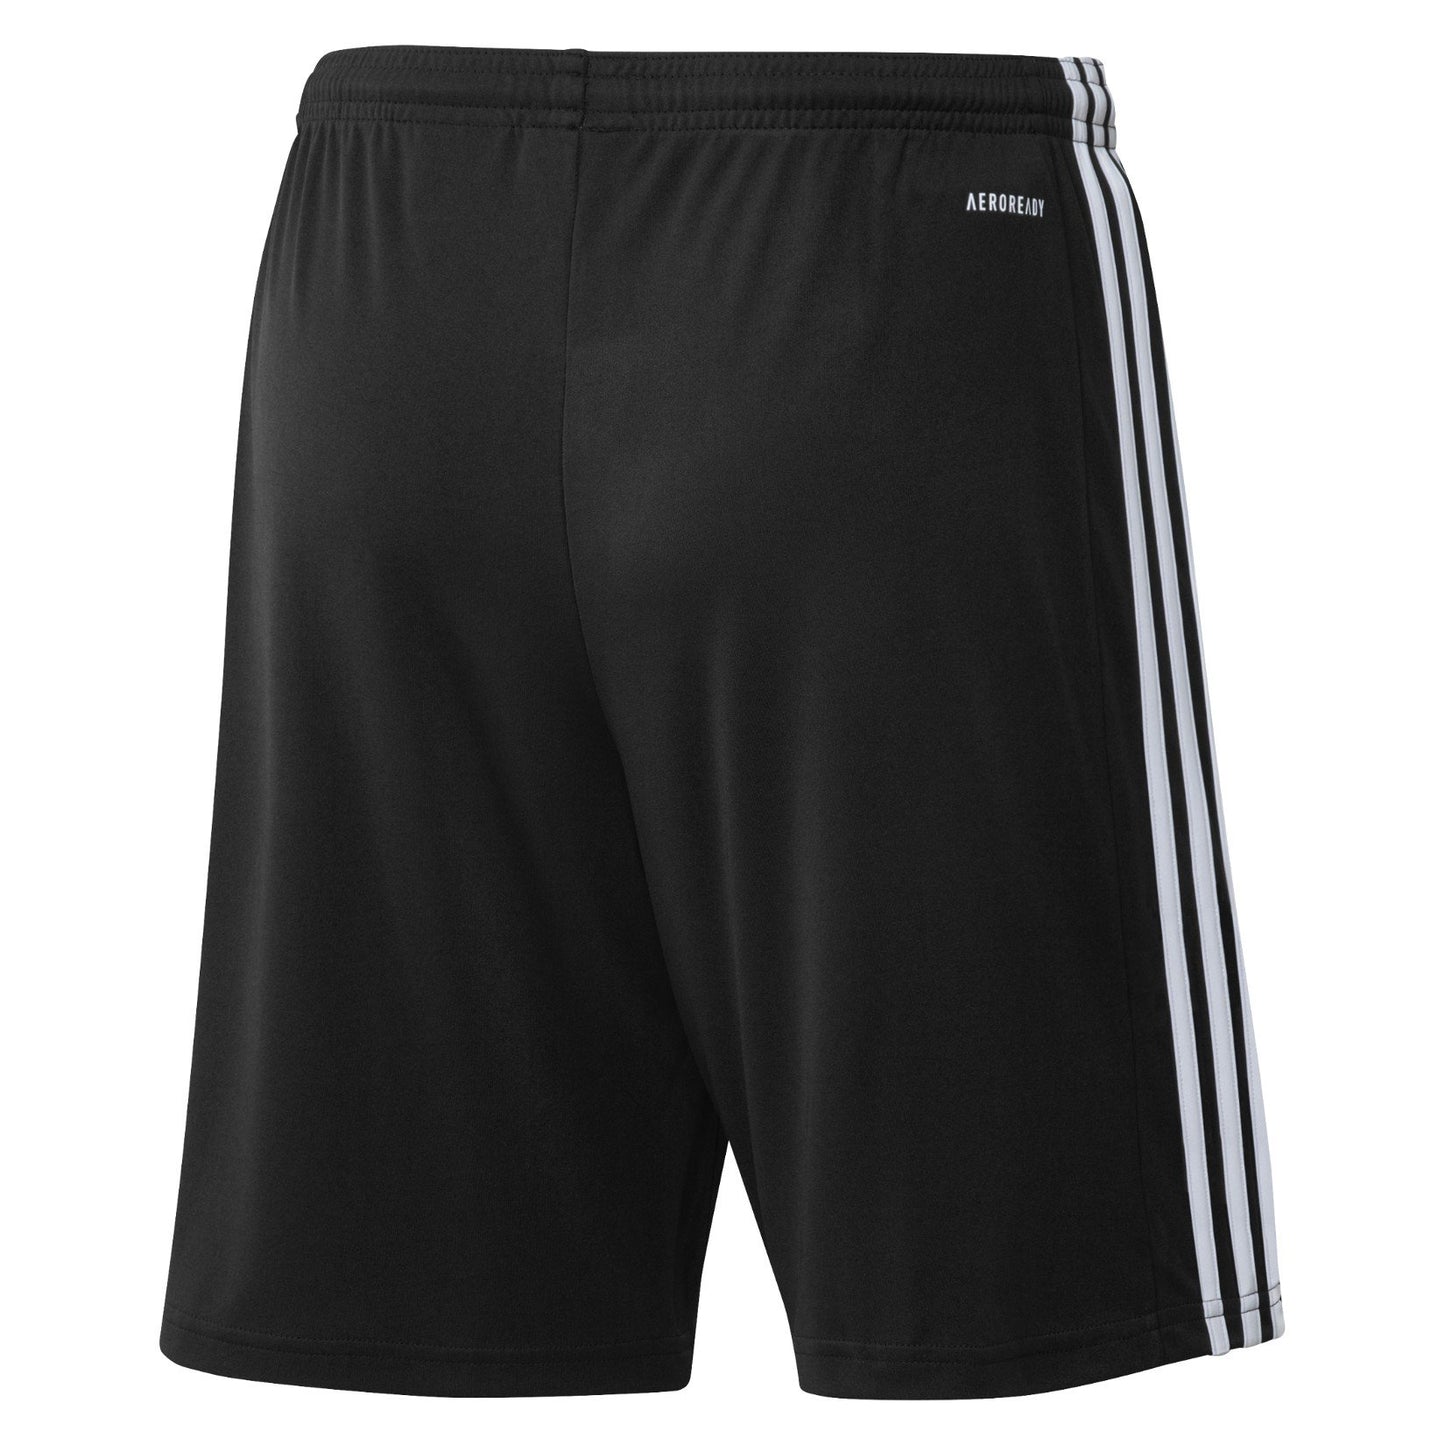 Adidas Squadra 21 Mens Football Shorts Black 3 stripes